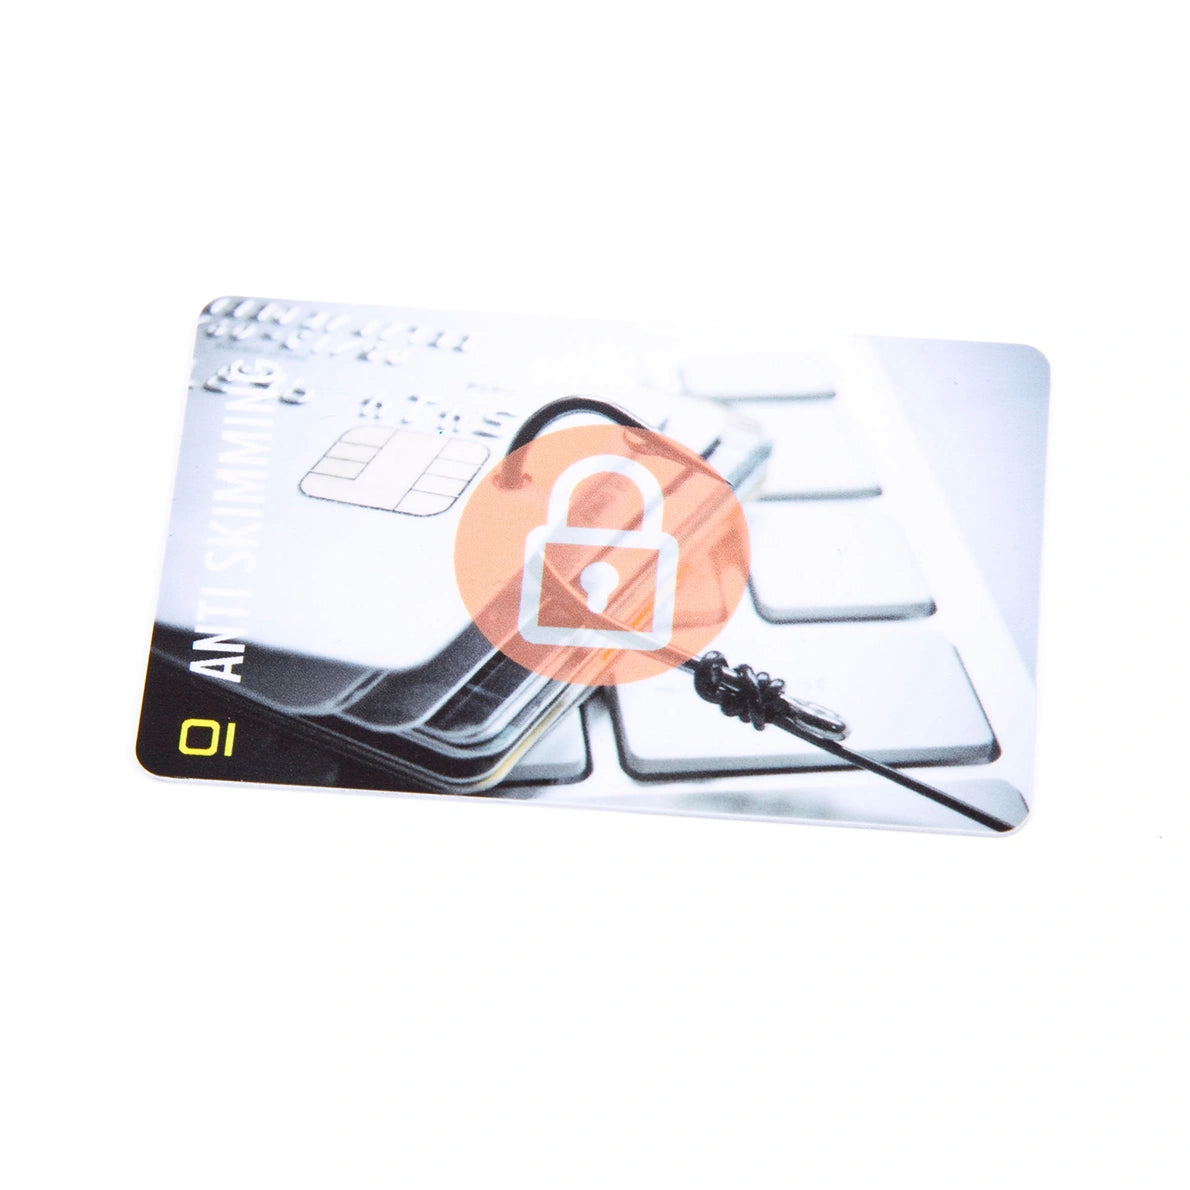 RFID Blocker Karte - Premium Schutz